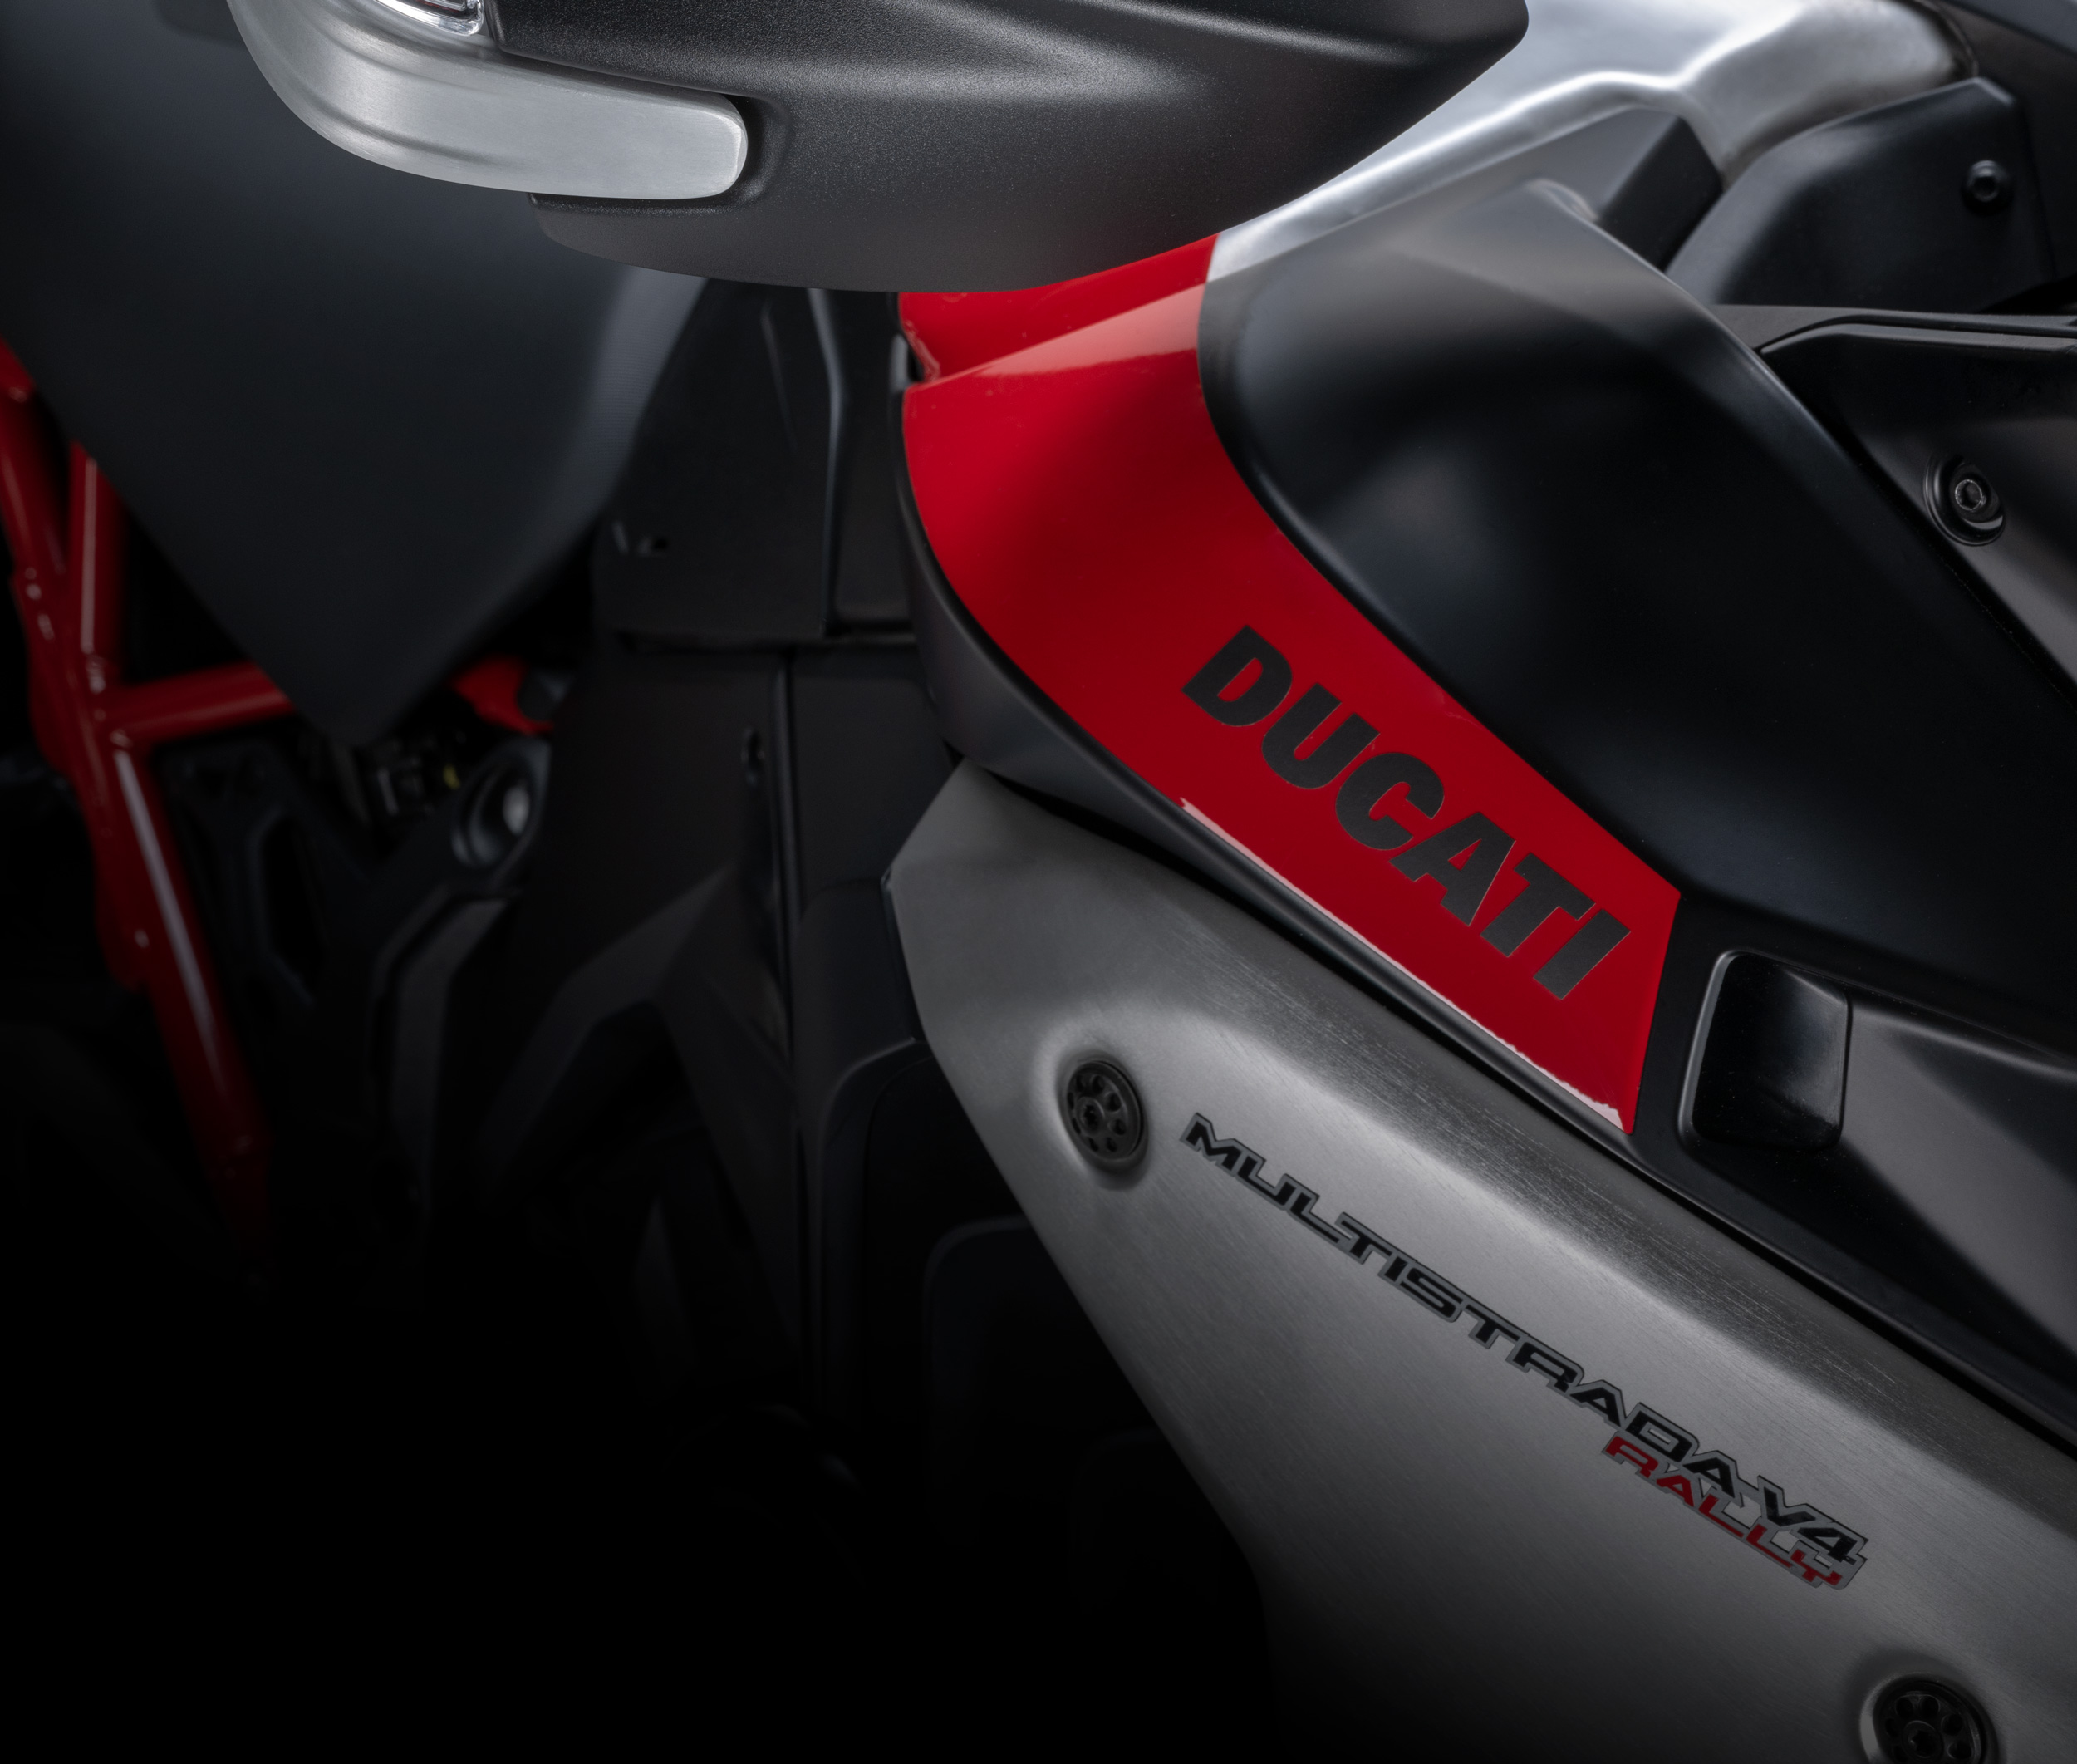 Ducati off-road equipment. Built for adventure